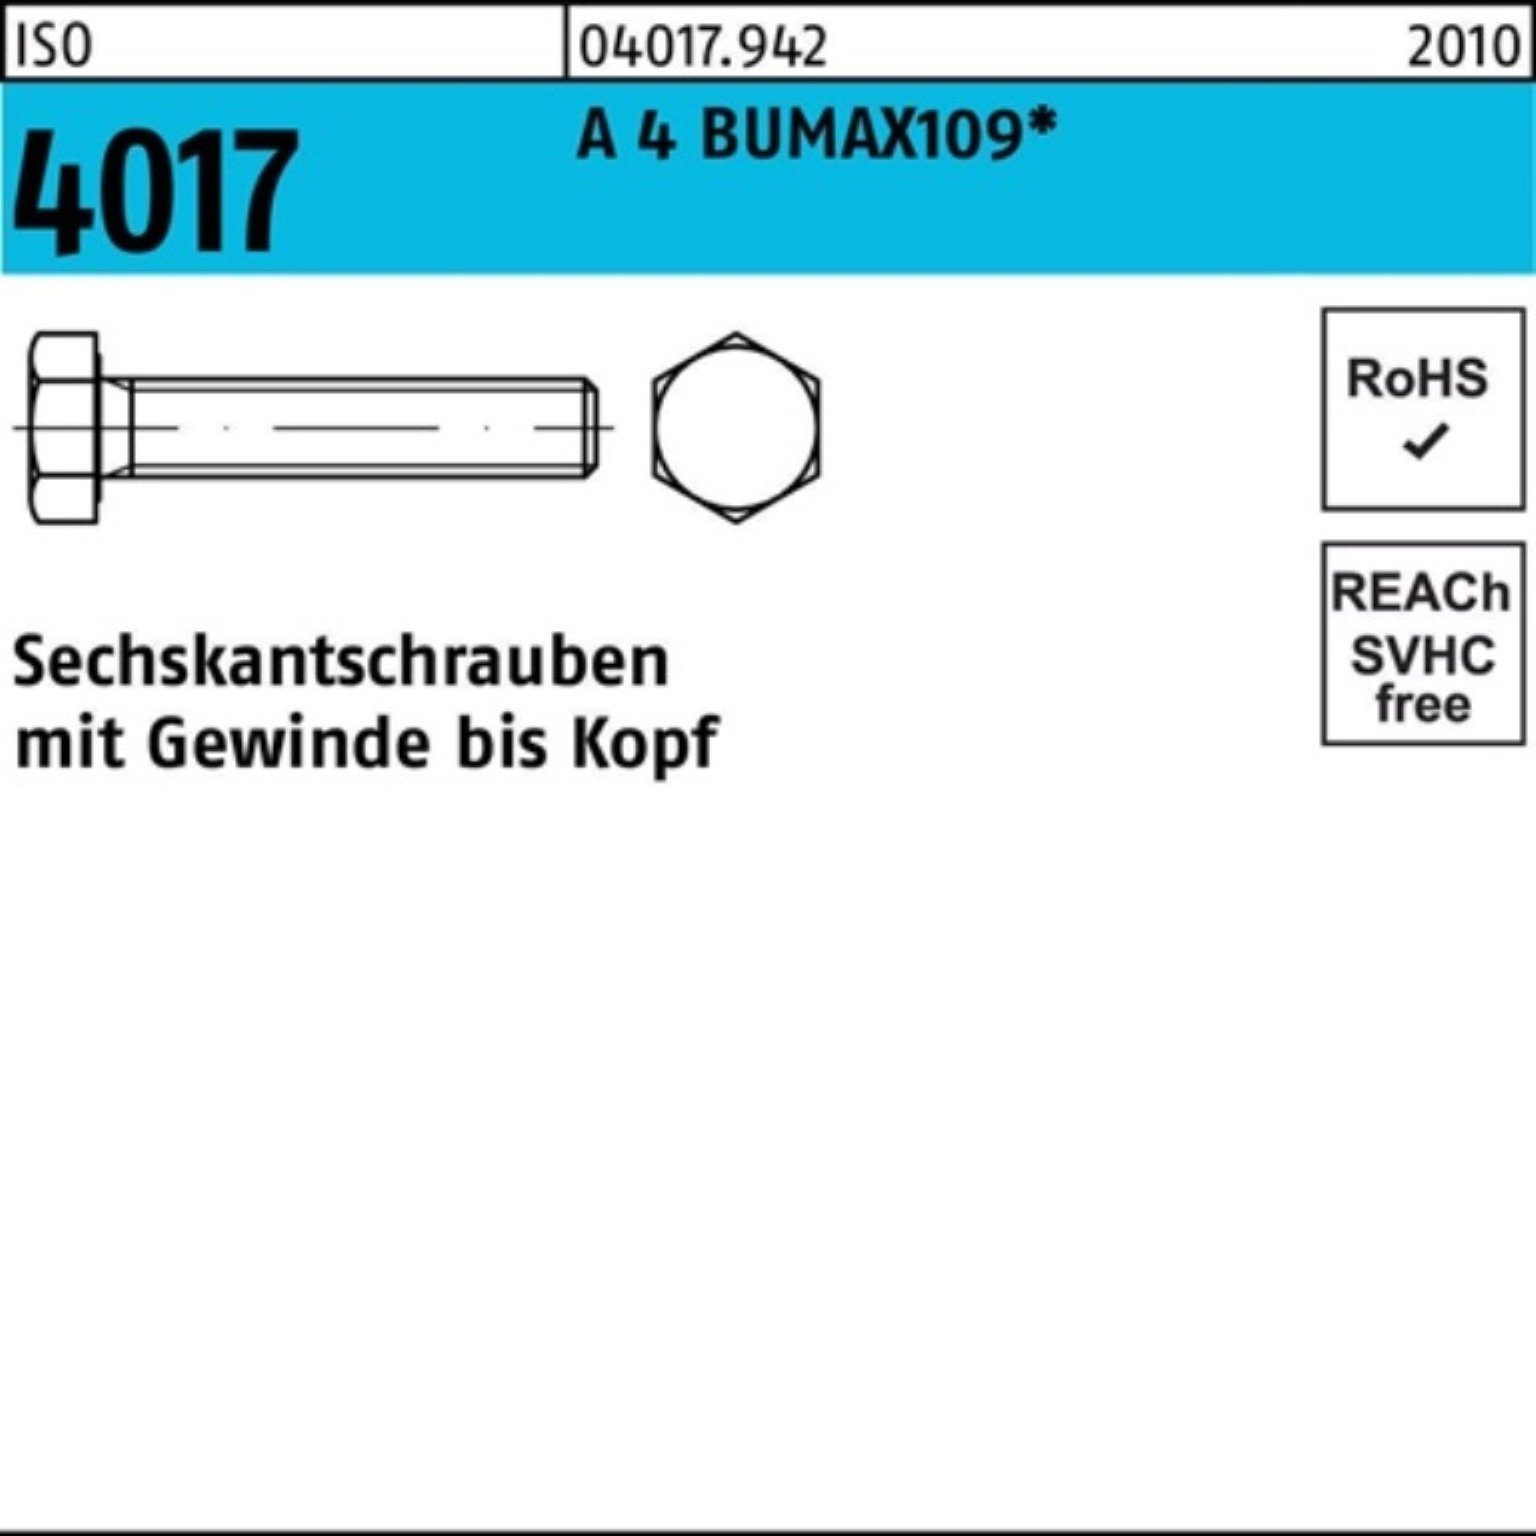 Bufab Sechskantschraube 100er Pack Sechskantschraube ISO 4017 VG M8x 40 A 4 BUMAX109 50 Stück